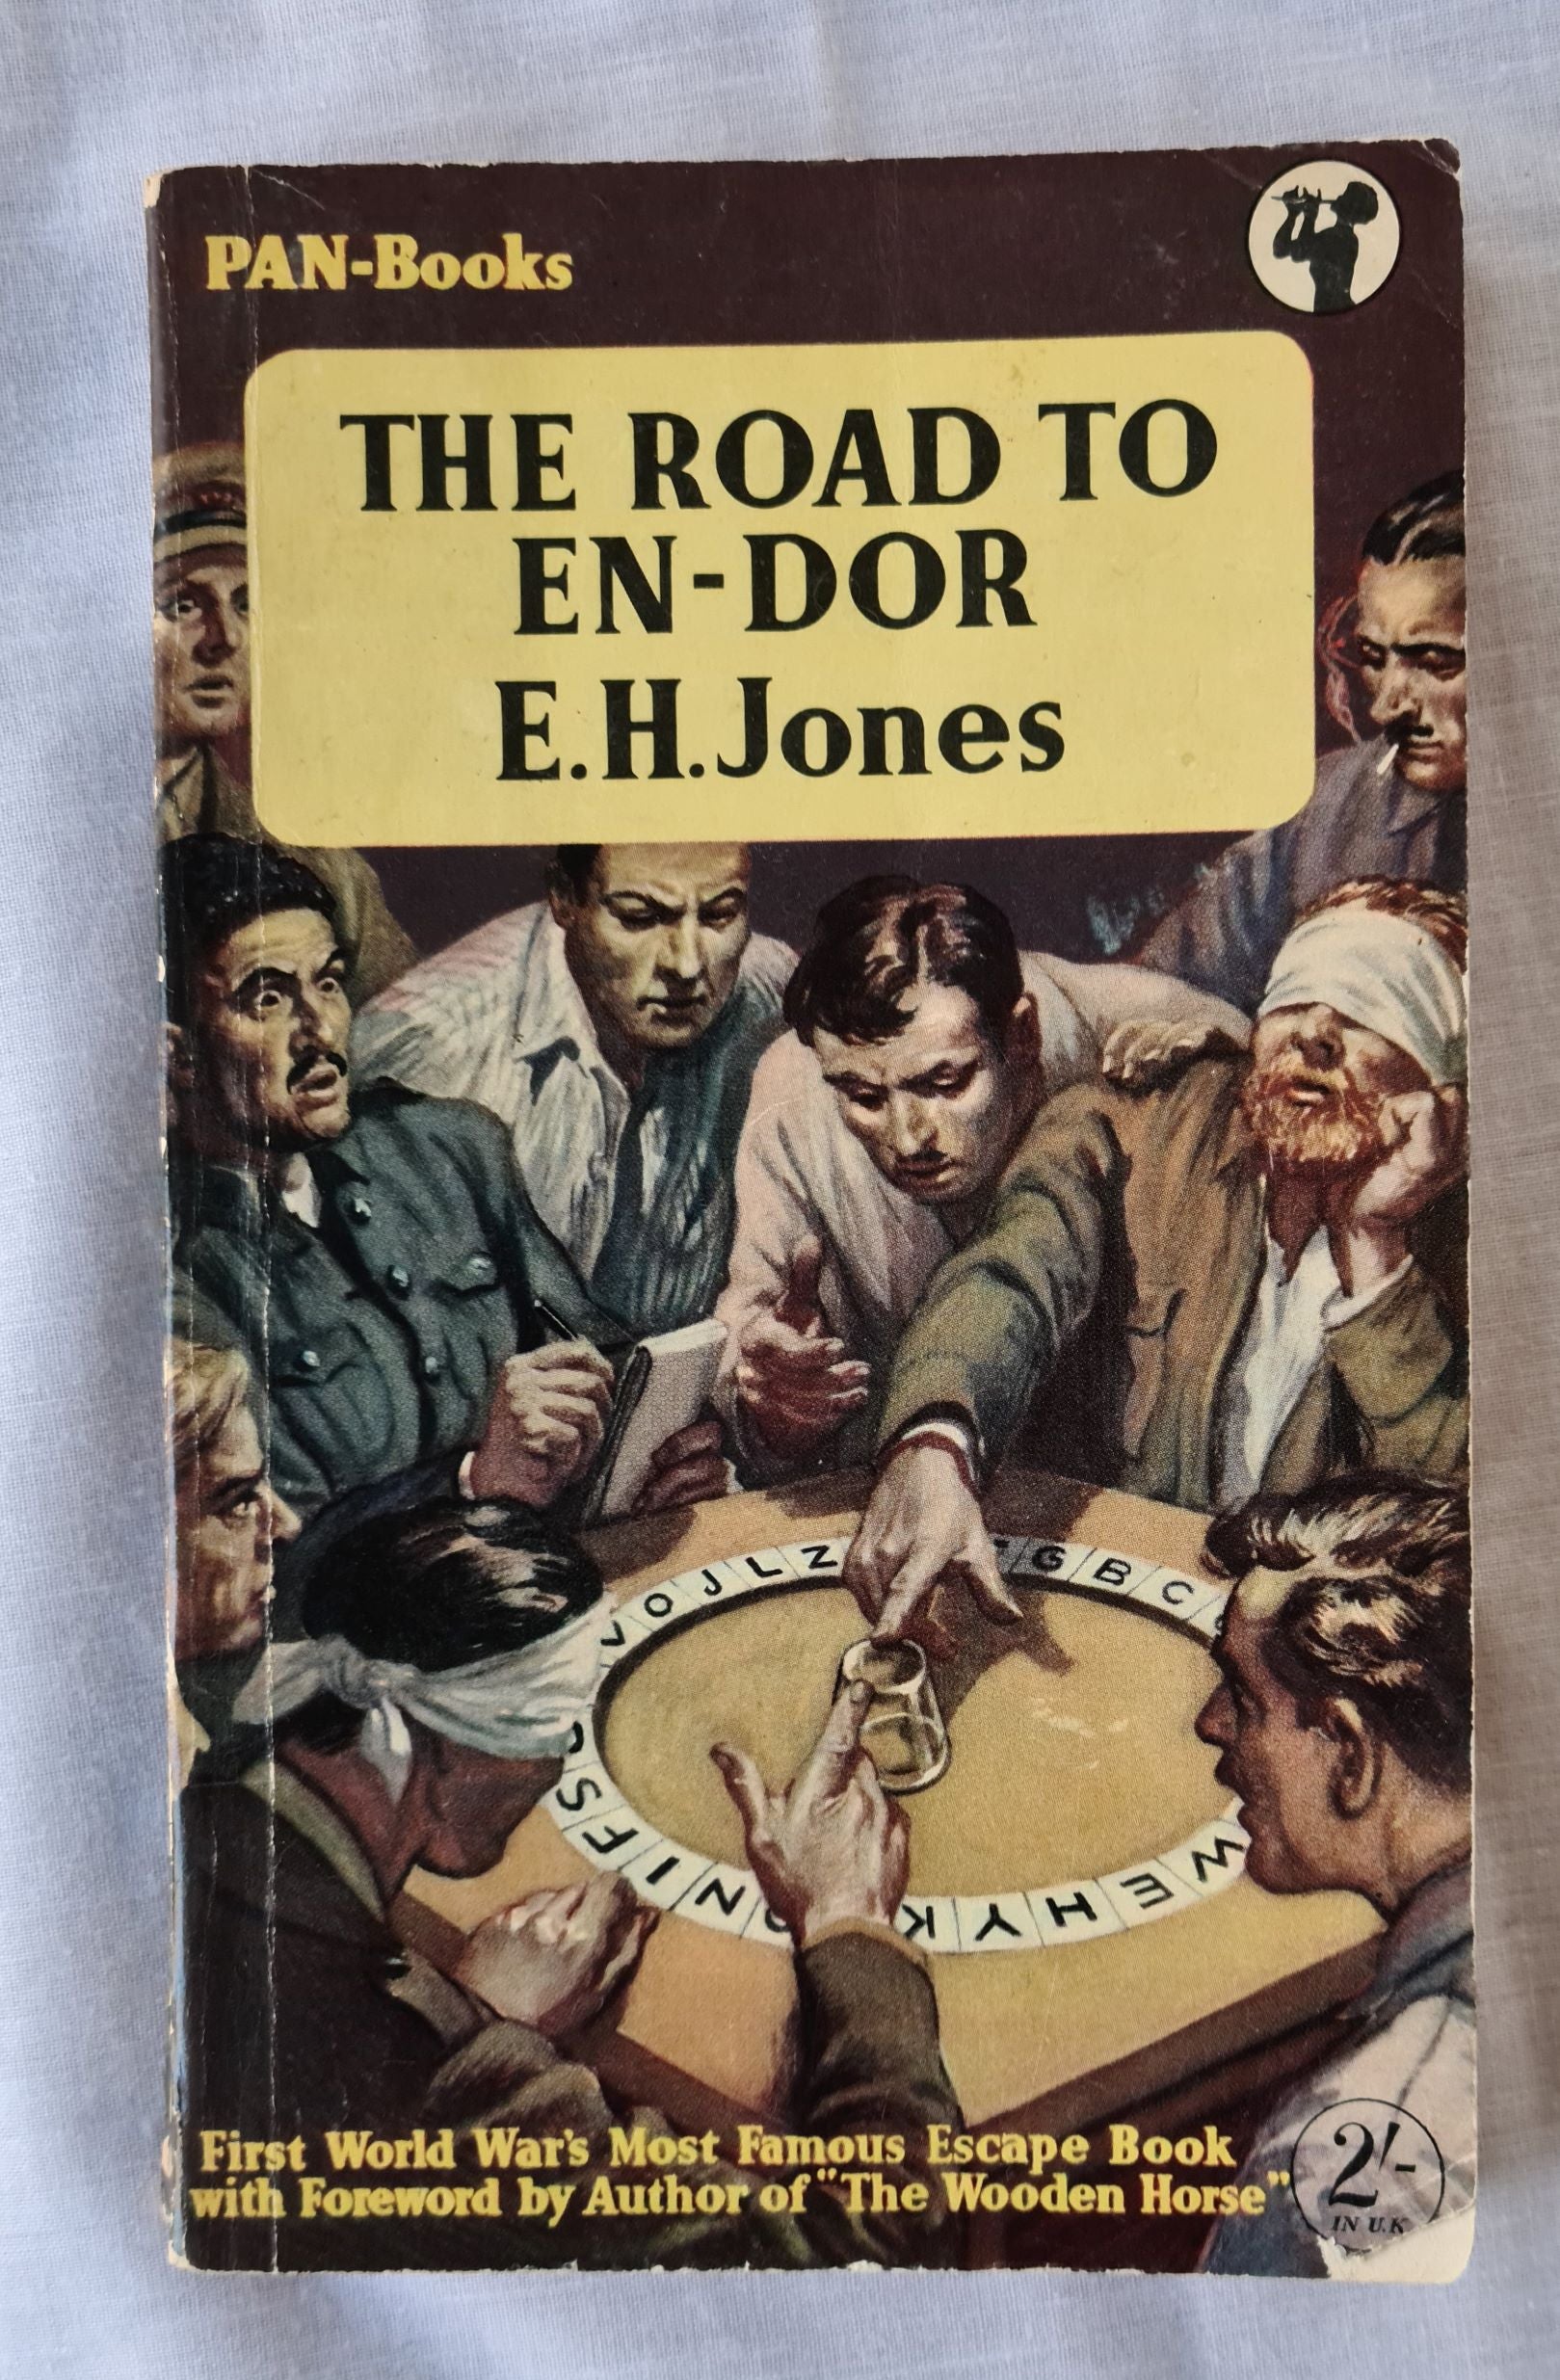 The Road to En-Dor by E. H. Jones